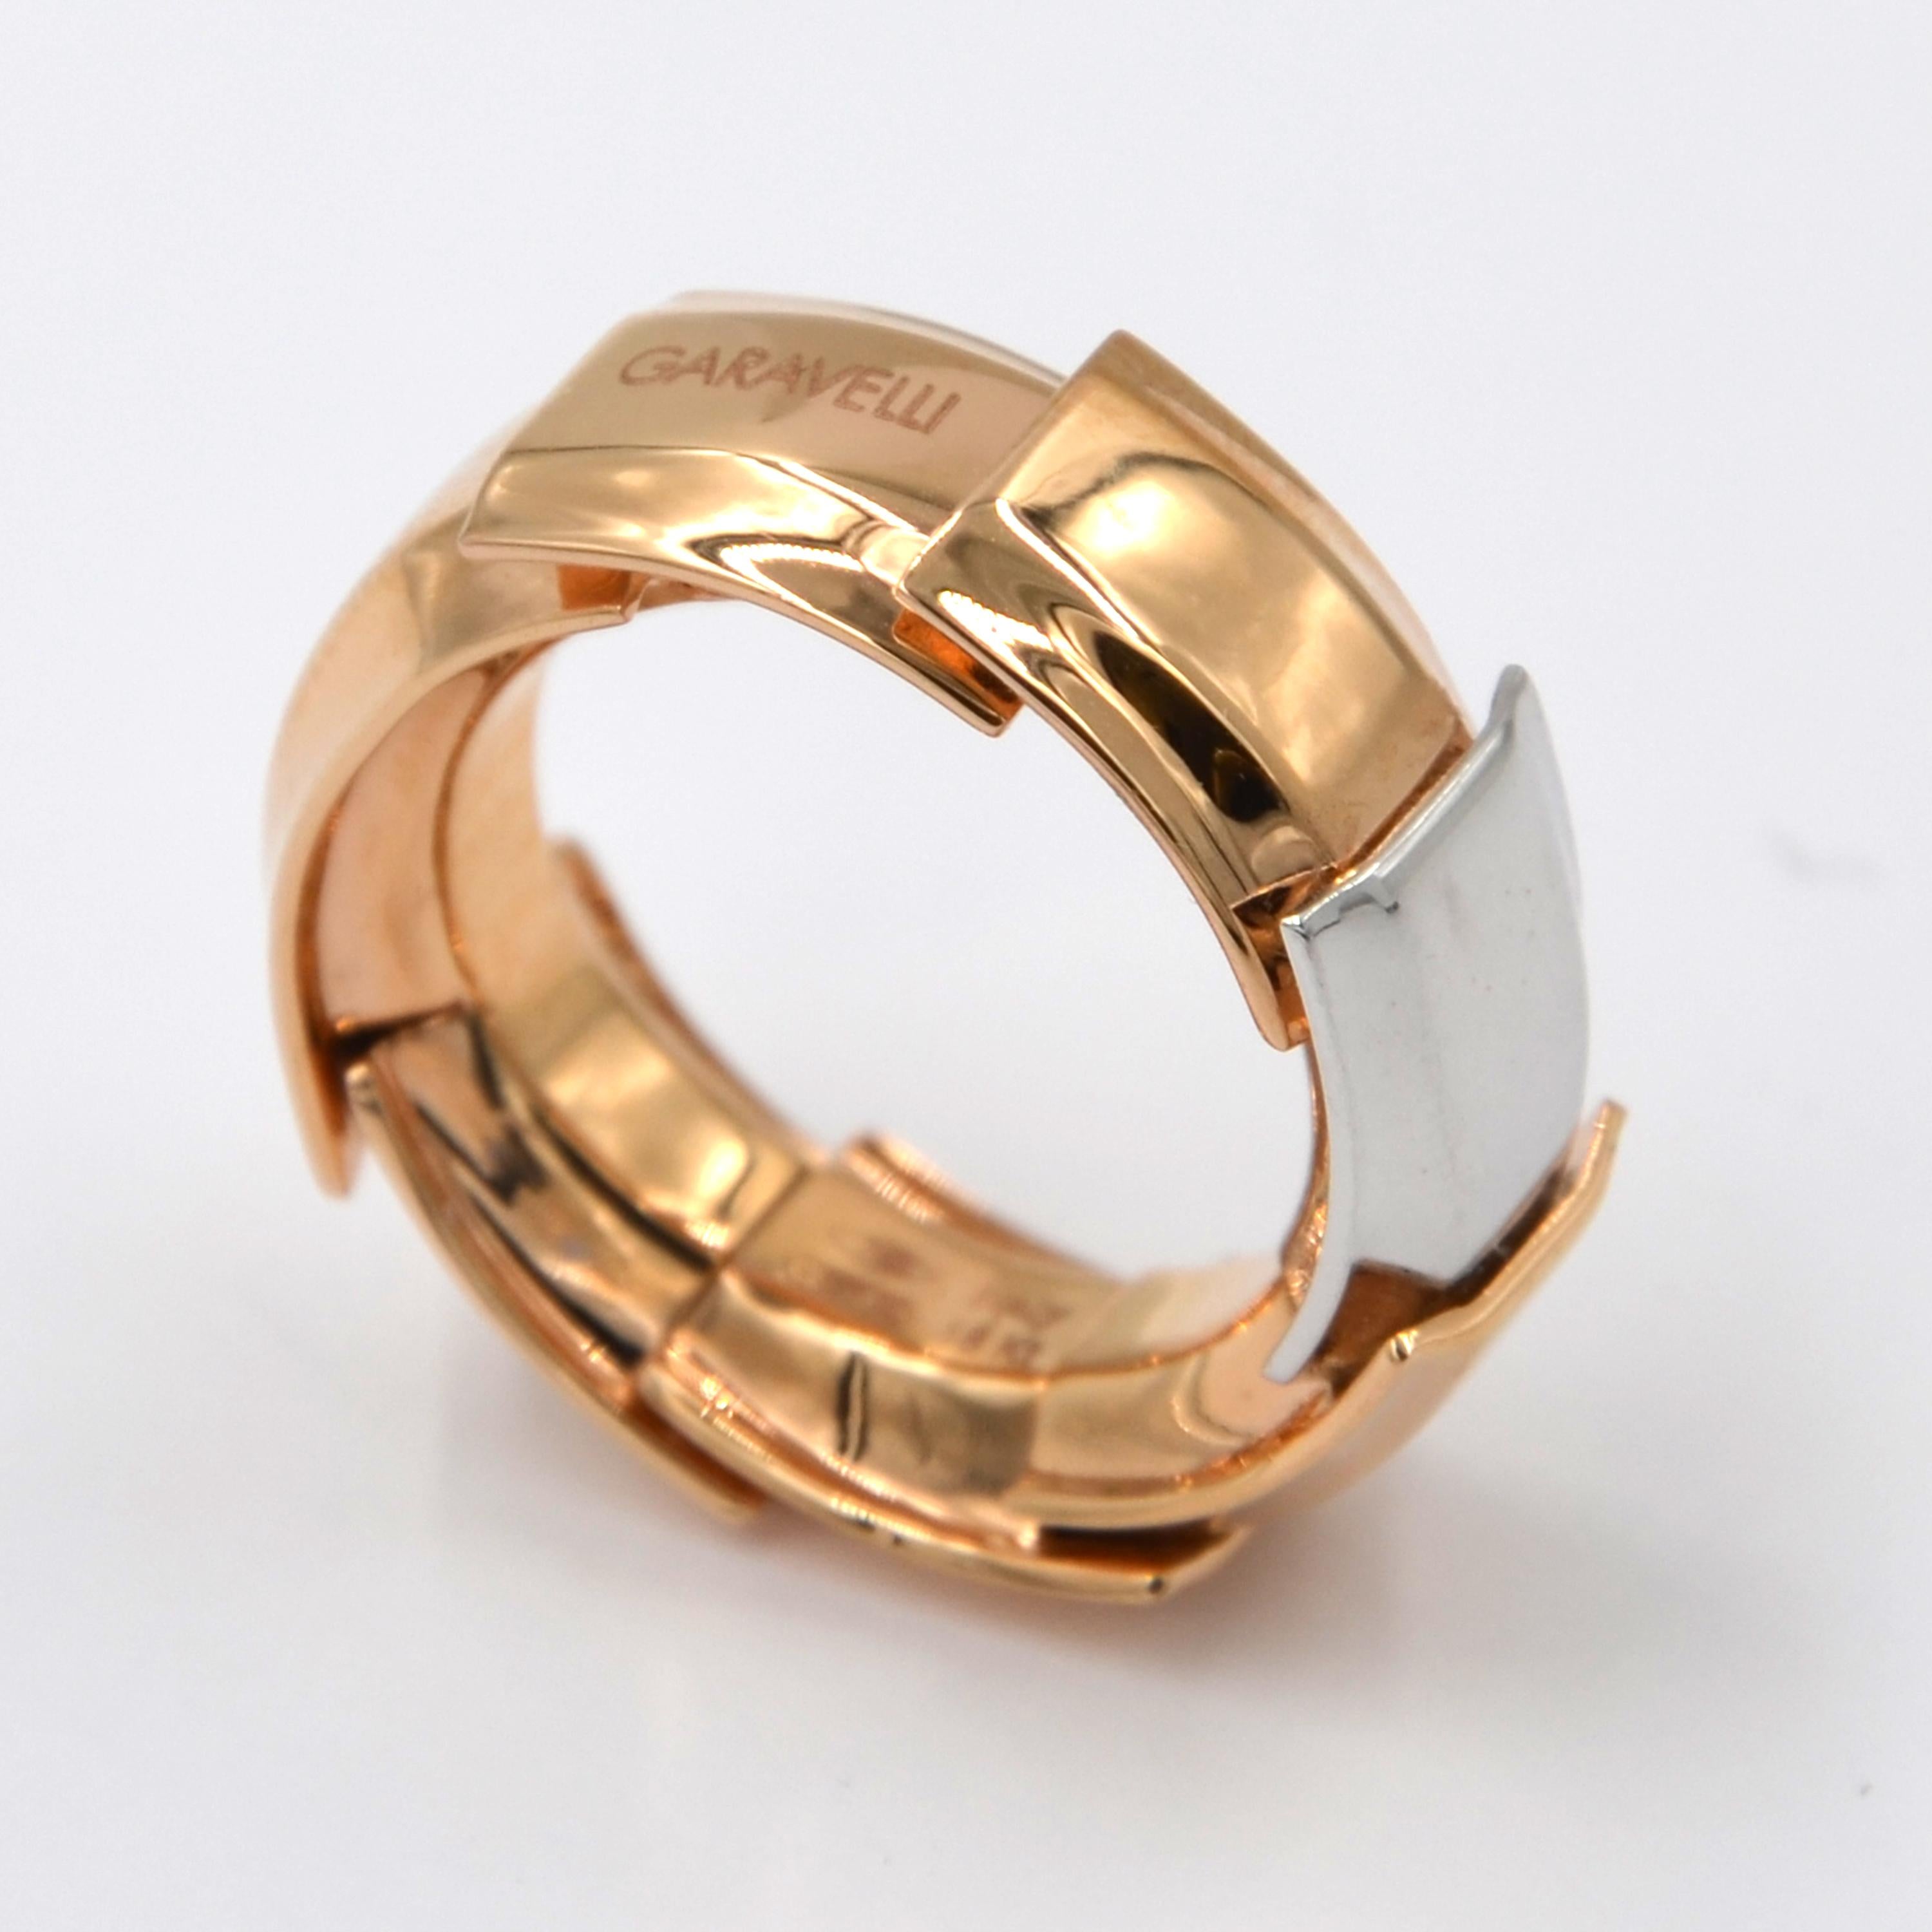 Garavelli 18 Karat Rose and White Gold Drago Collection Ring 2